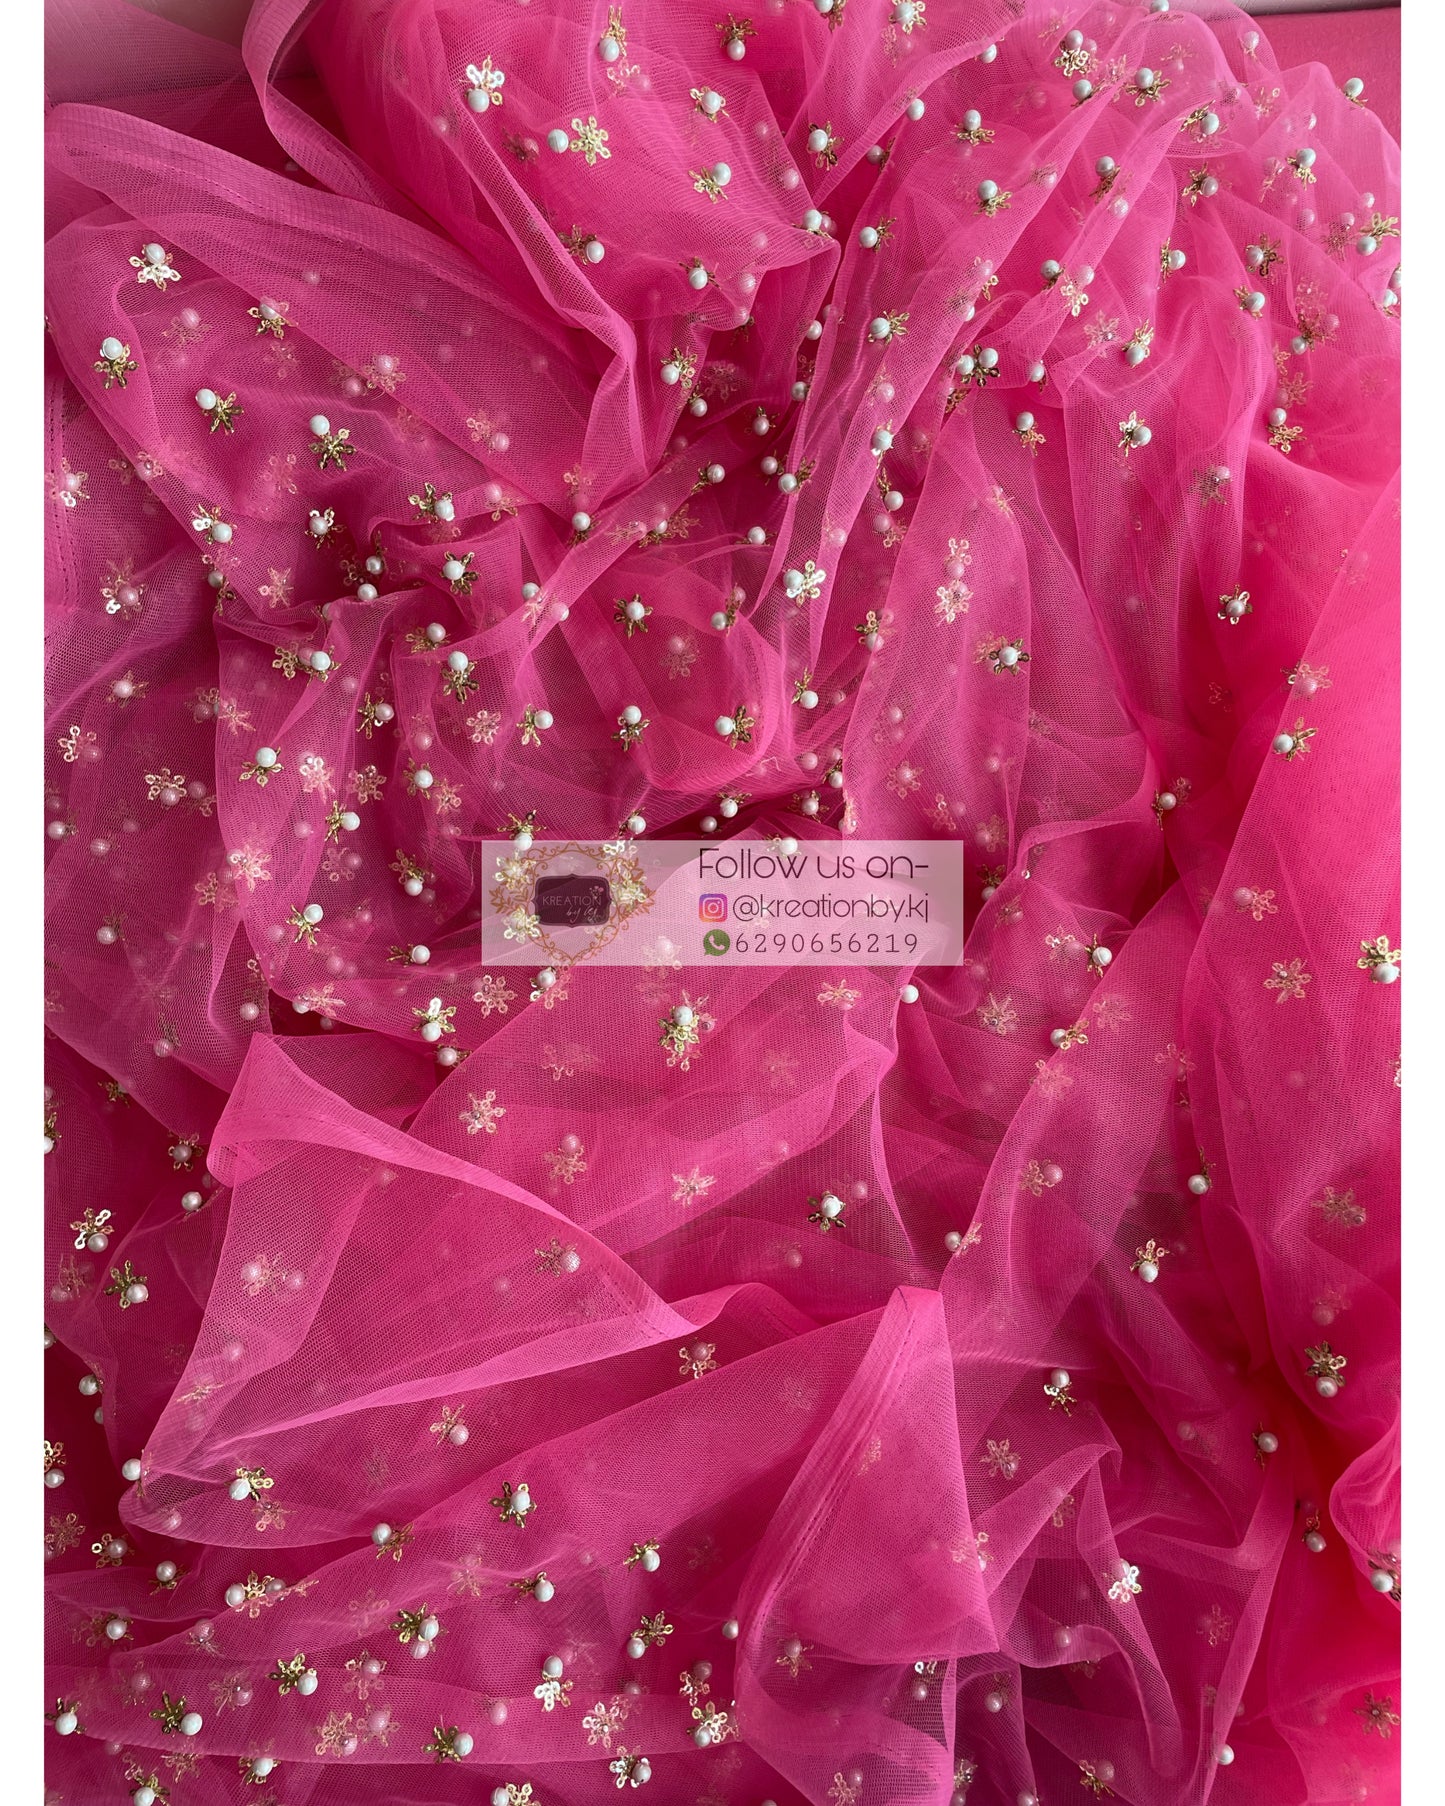 Jugnoo Pink Net Saree - kreationbykj